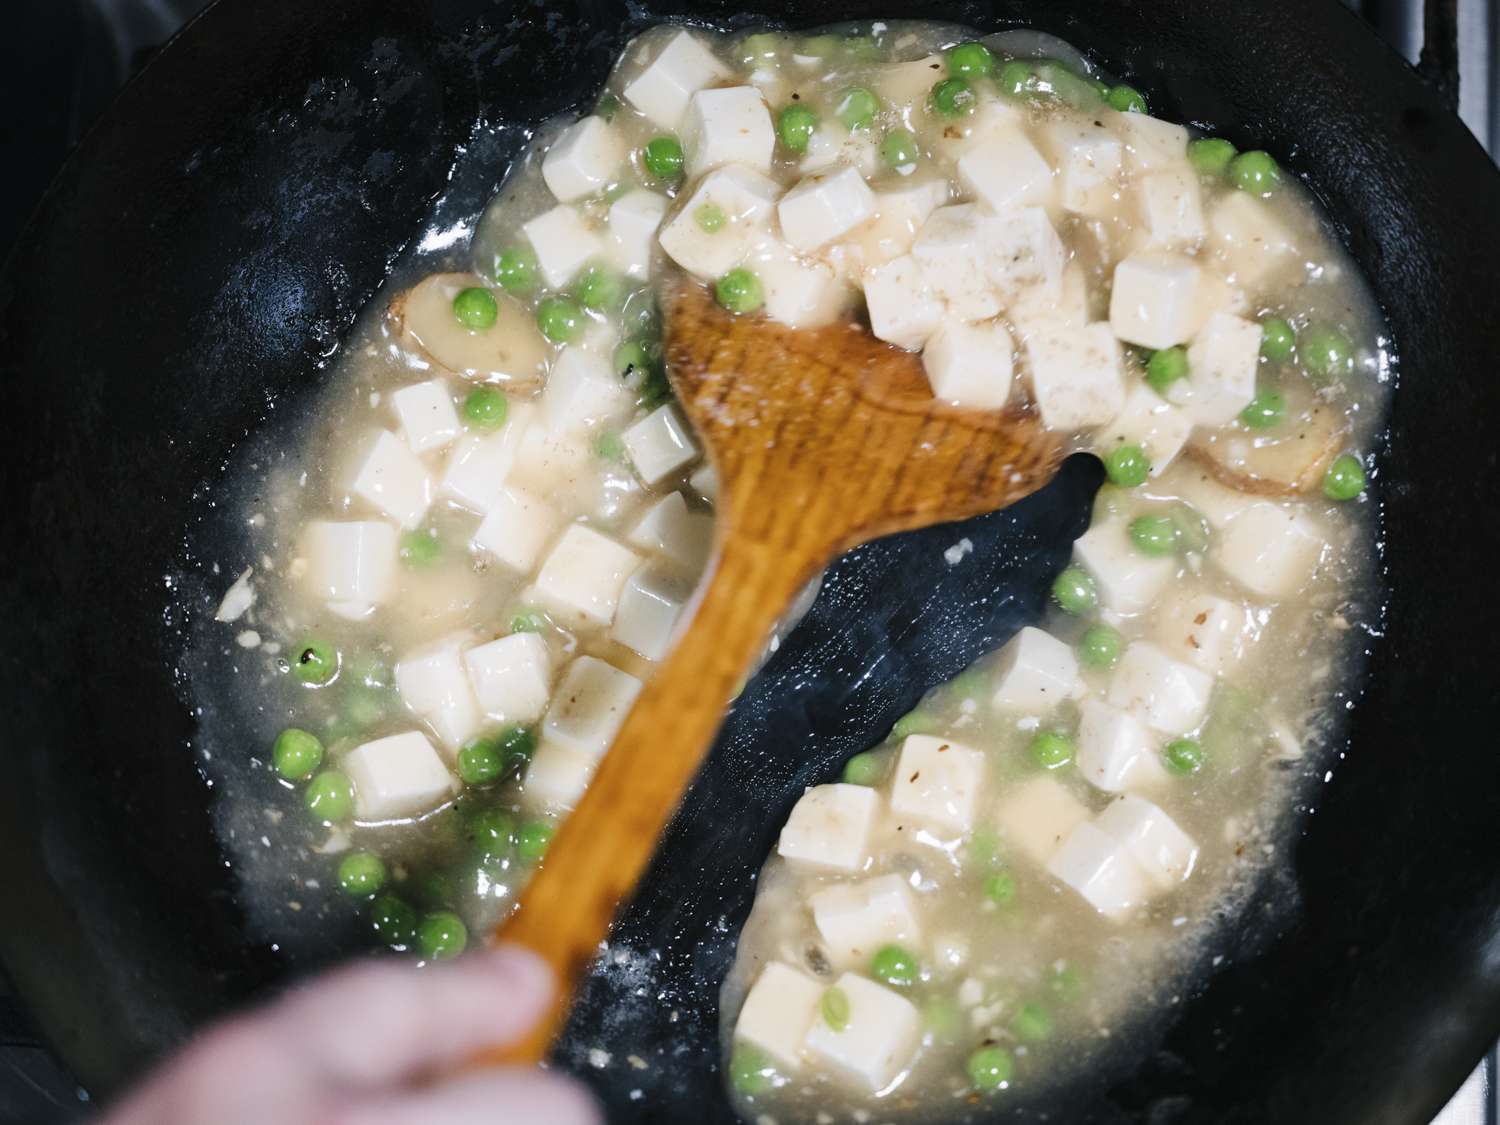 锅铲在锅里搅拌豌豆、豆腐和玉米淀粉浆，可以看出酱汁的粘稠度。